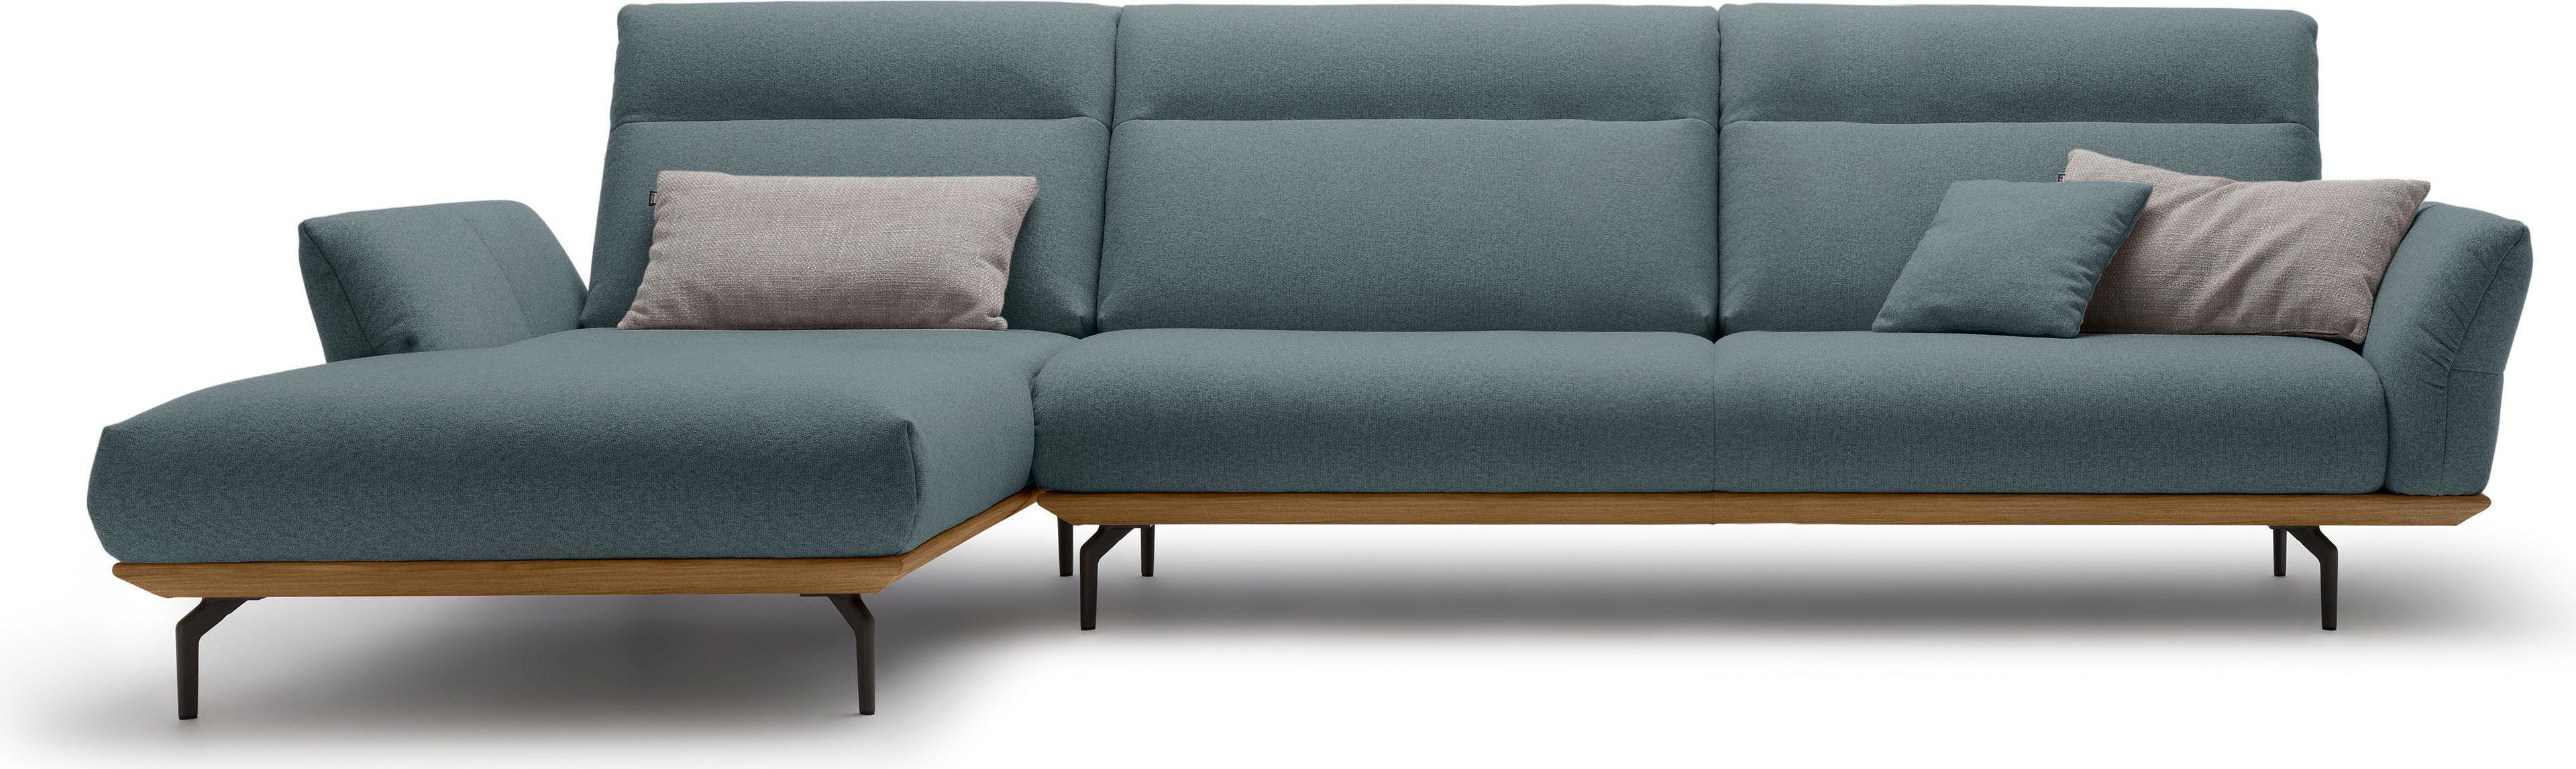 huelsta sofa hoekbank hs.460 sokkel in walnotenhout, onderstel in umbra grijs, breedte 338 cm blauw